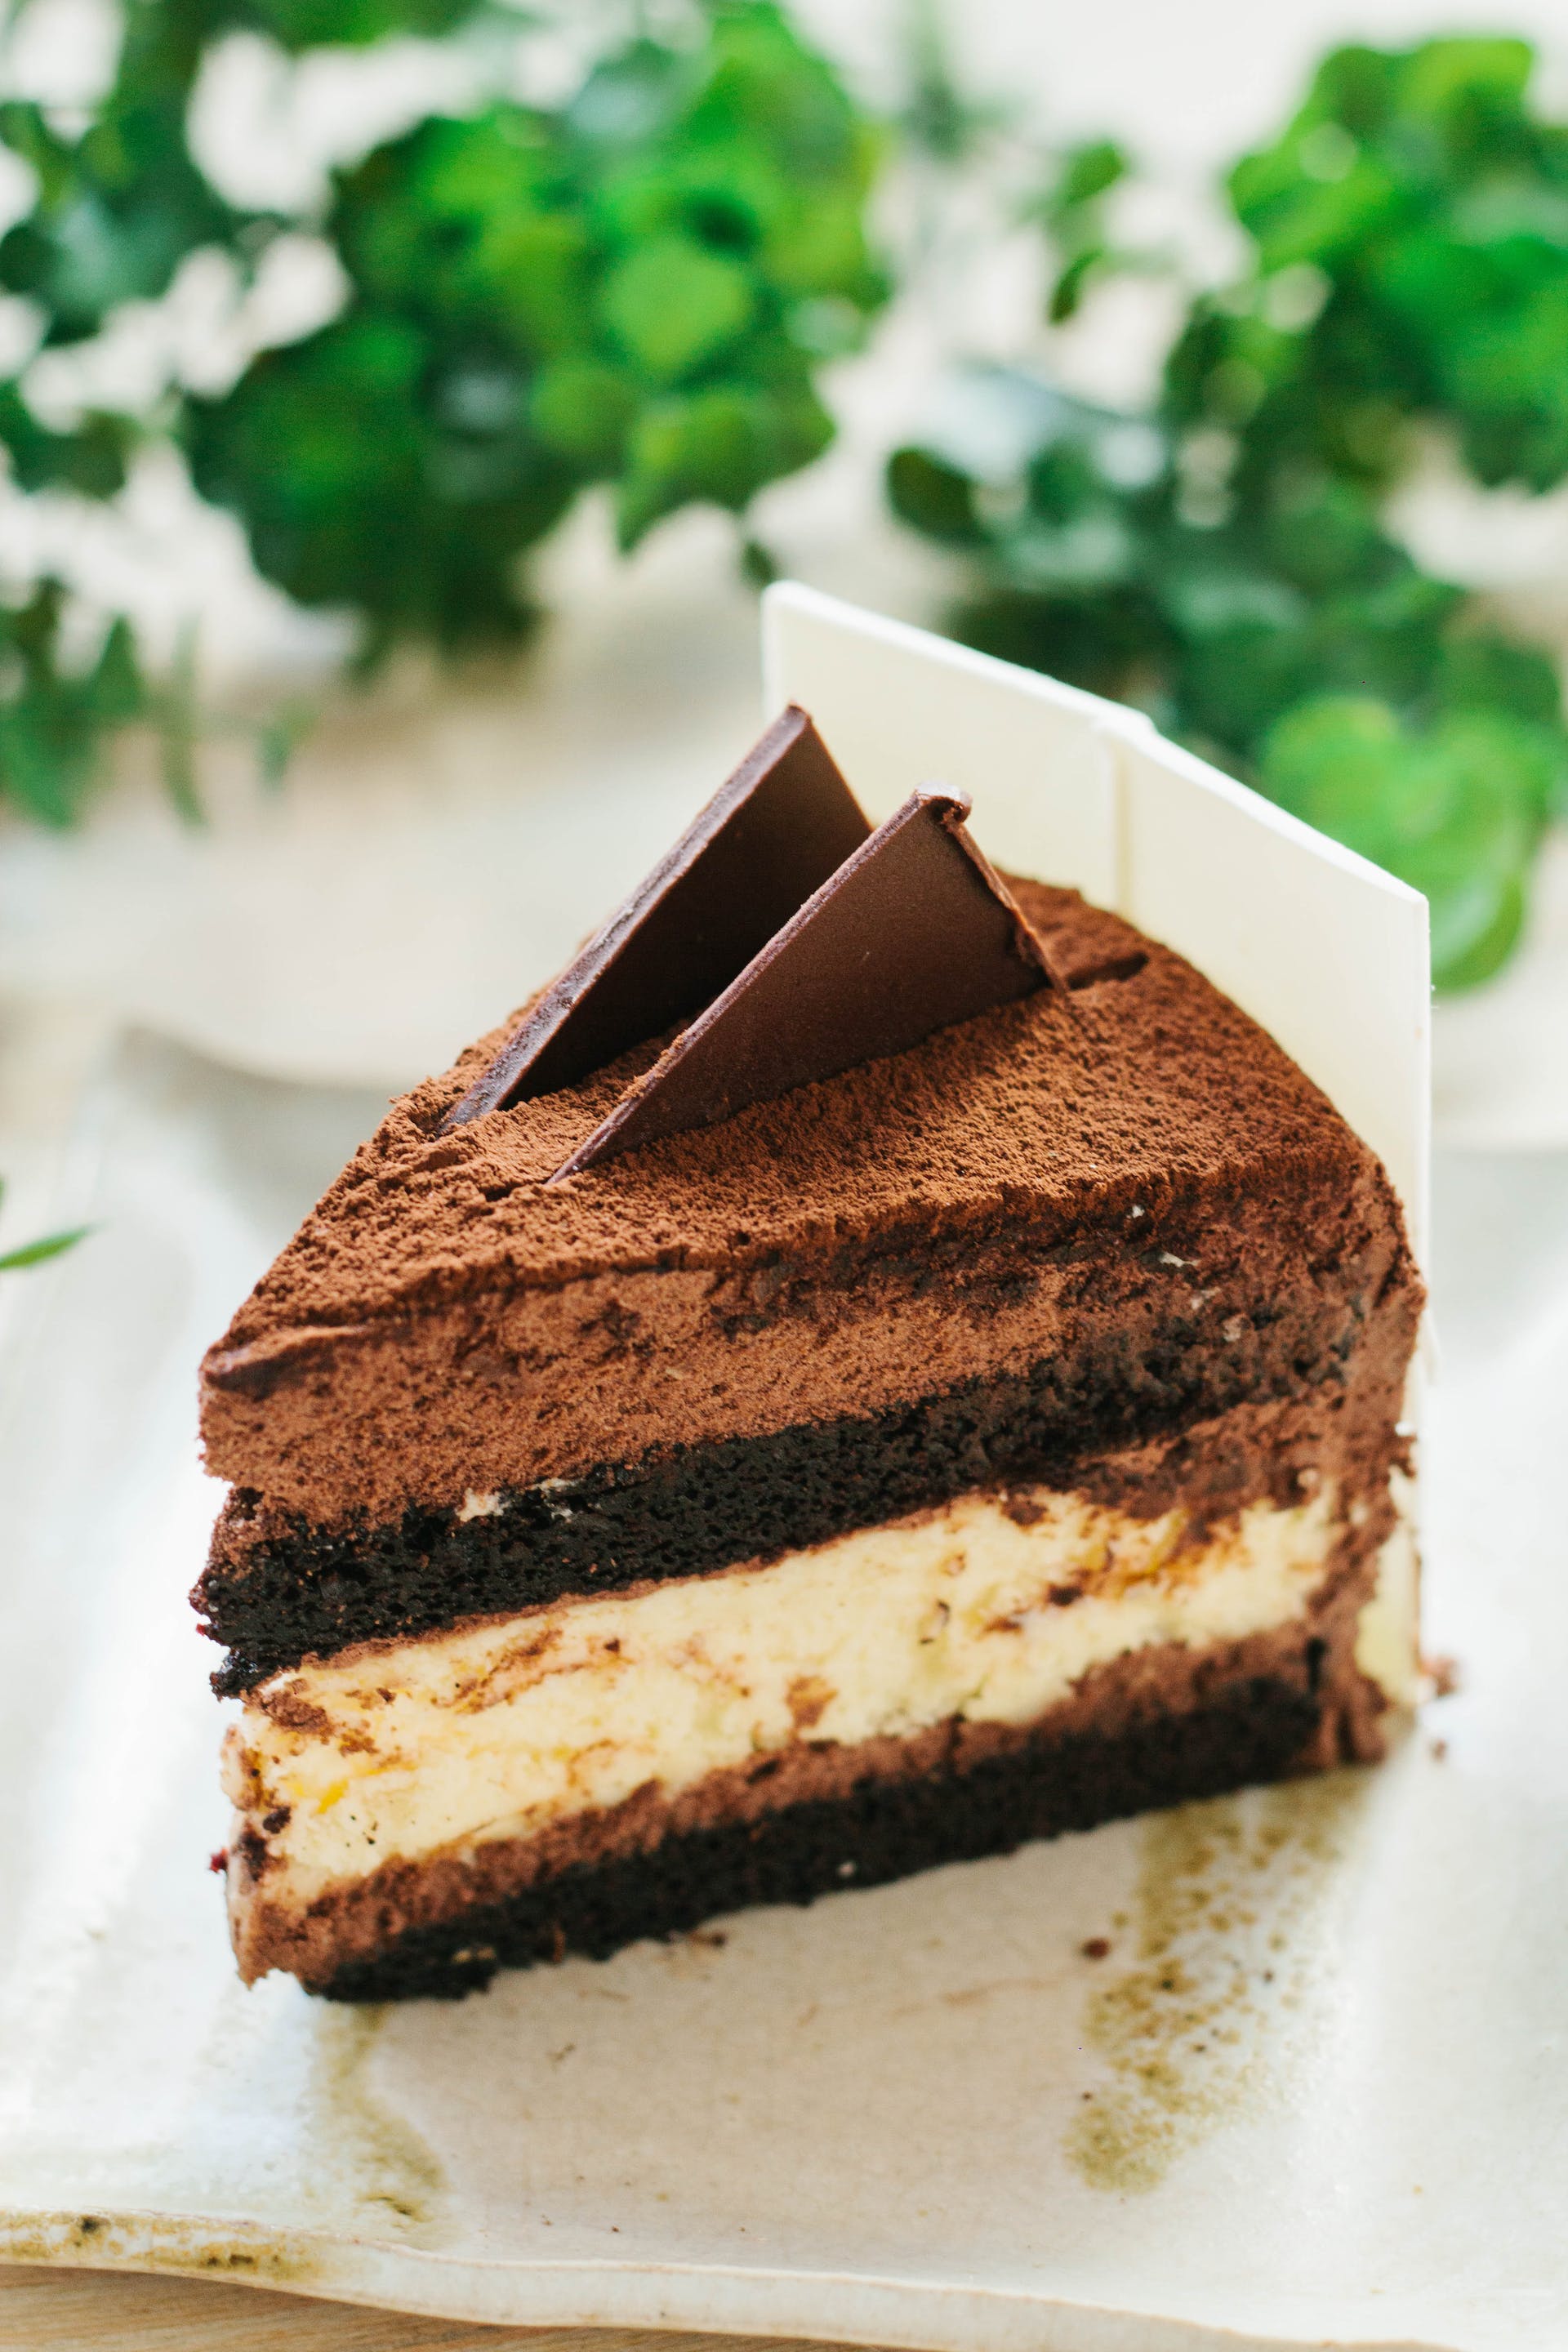 Tranche de gâteau au chocolat | Source : Pexels